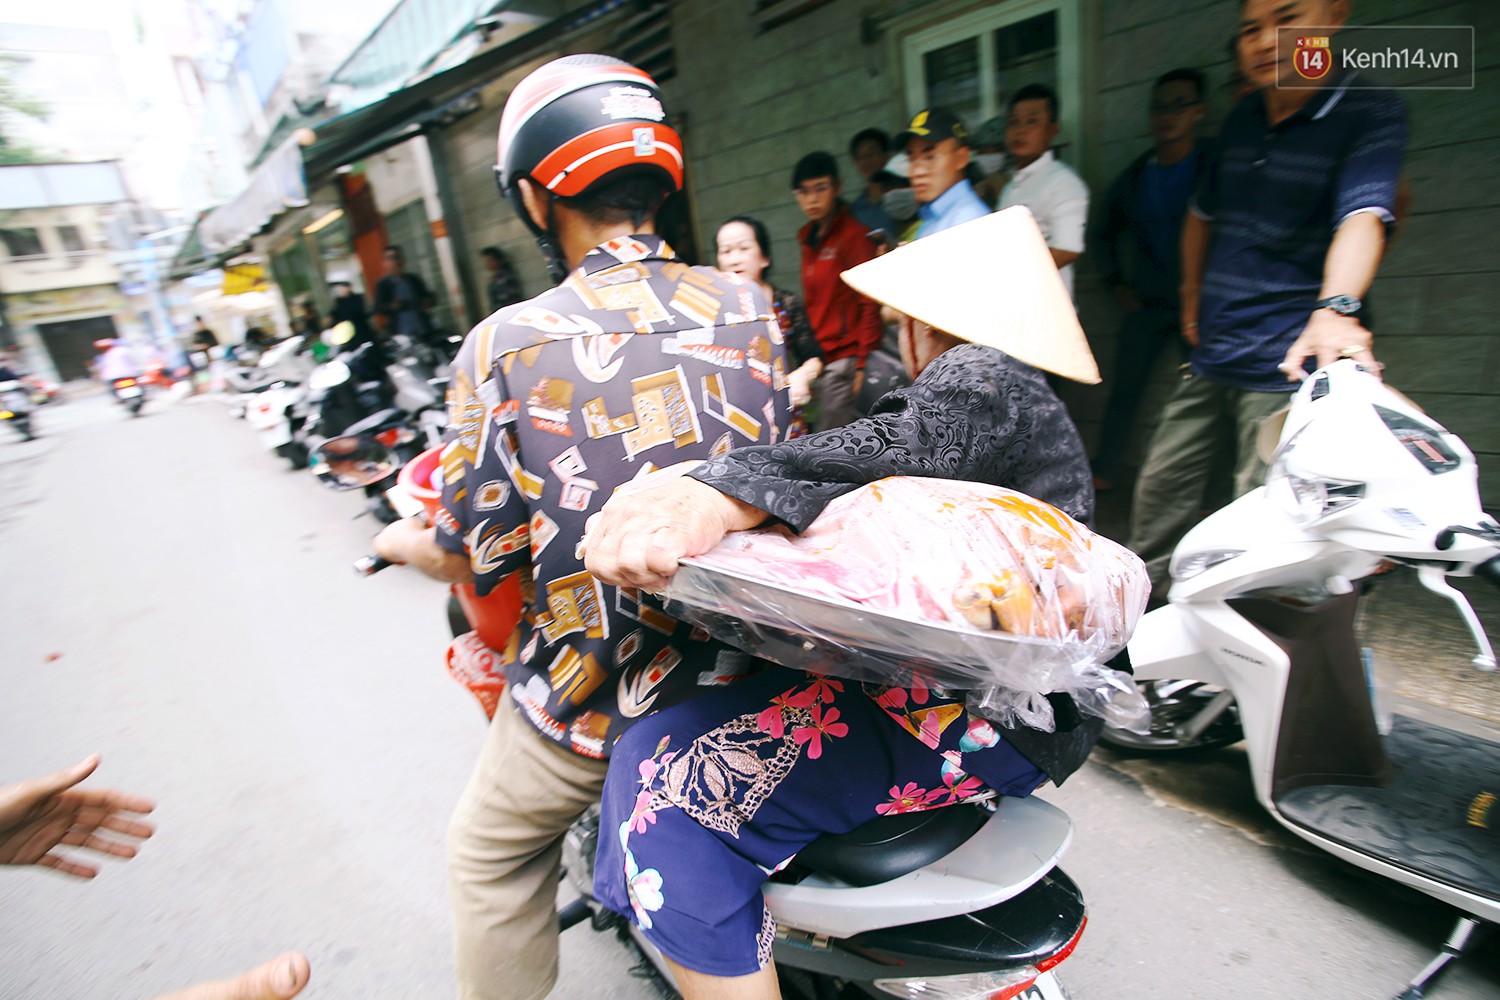 Cận cảnh người Sài Gòn chờ hàng giờ đồng hồ, tranh mua mâm cua dì Ba chỉ bán 10 phút là hết sạch - Ảnh 4.